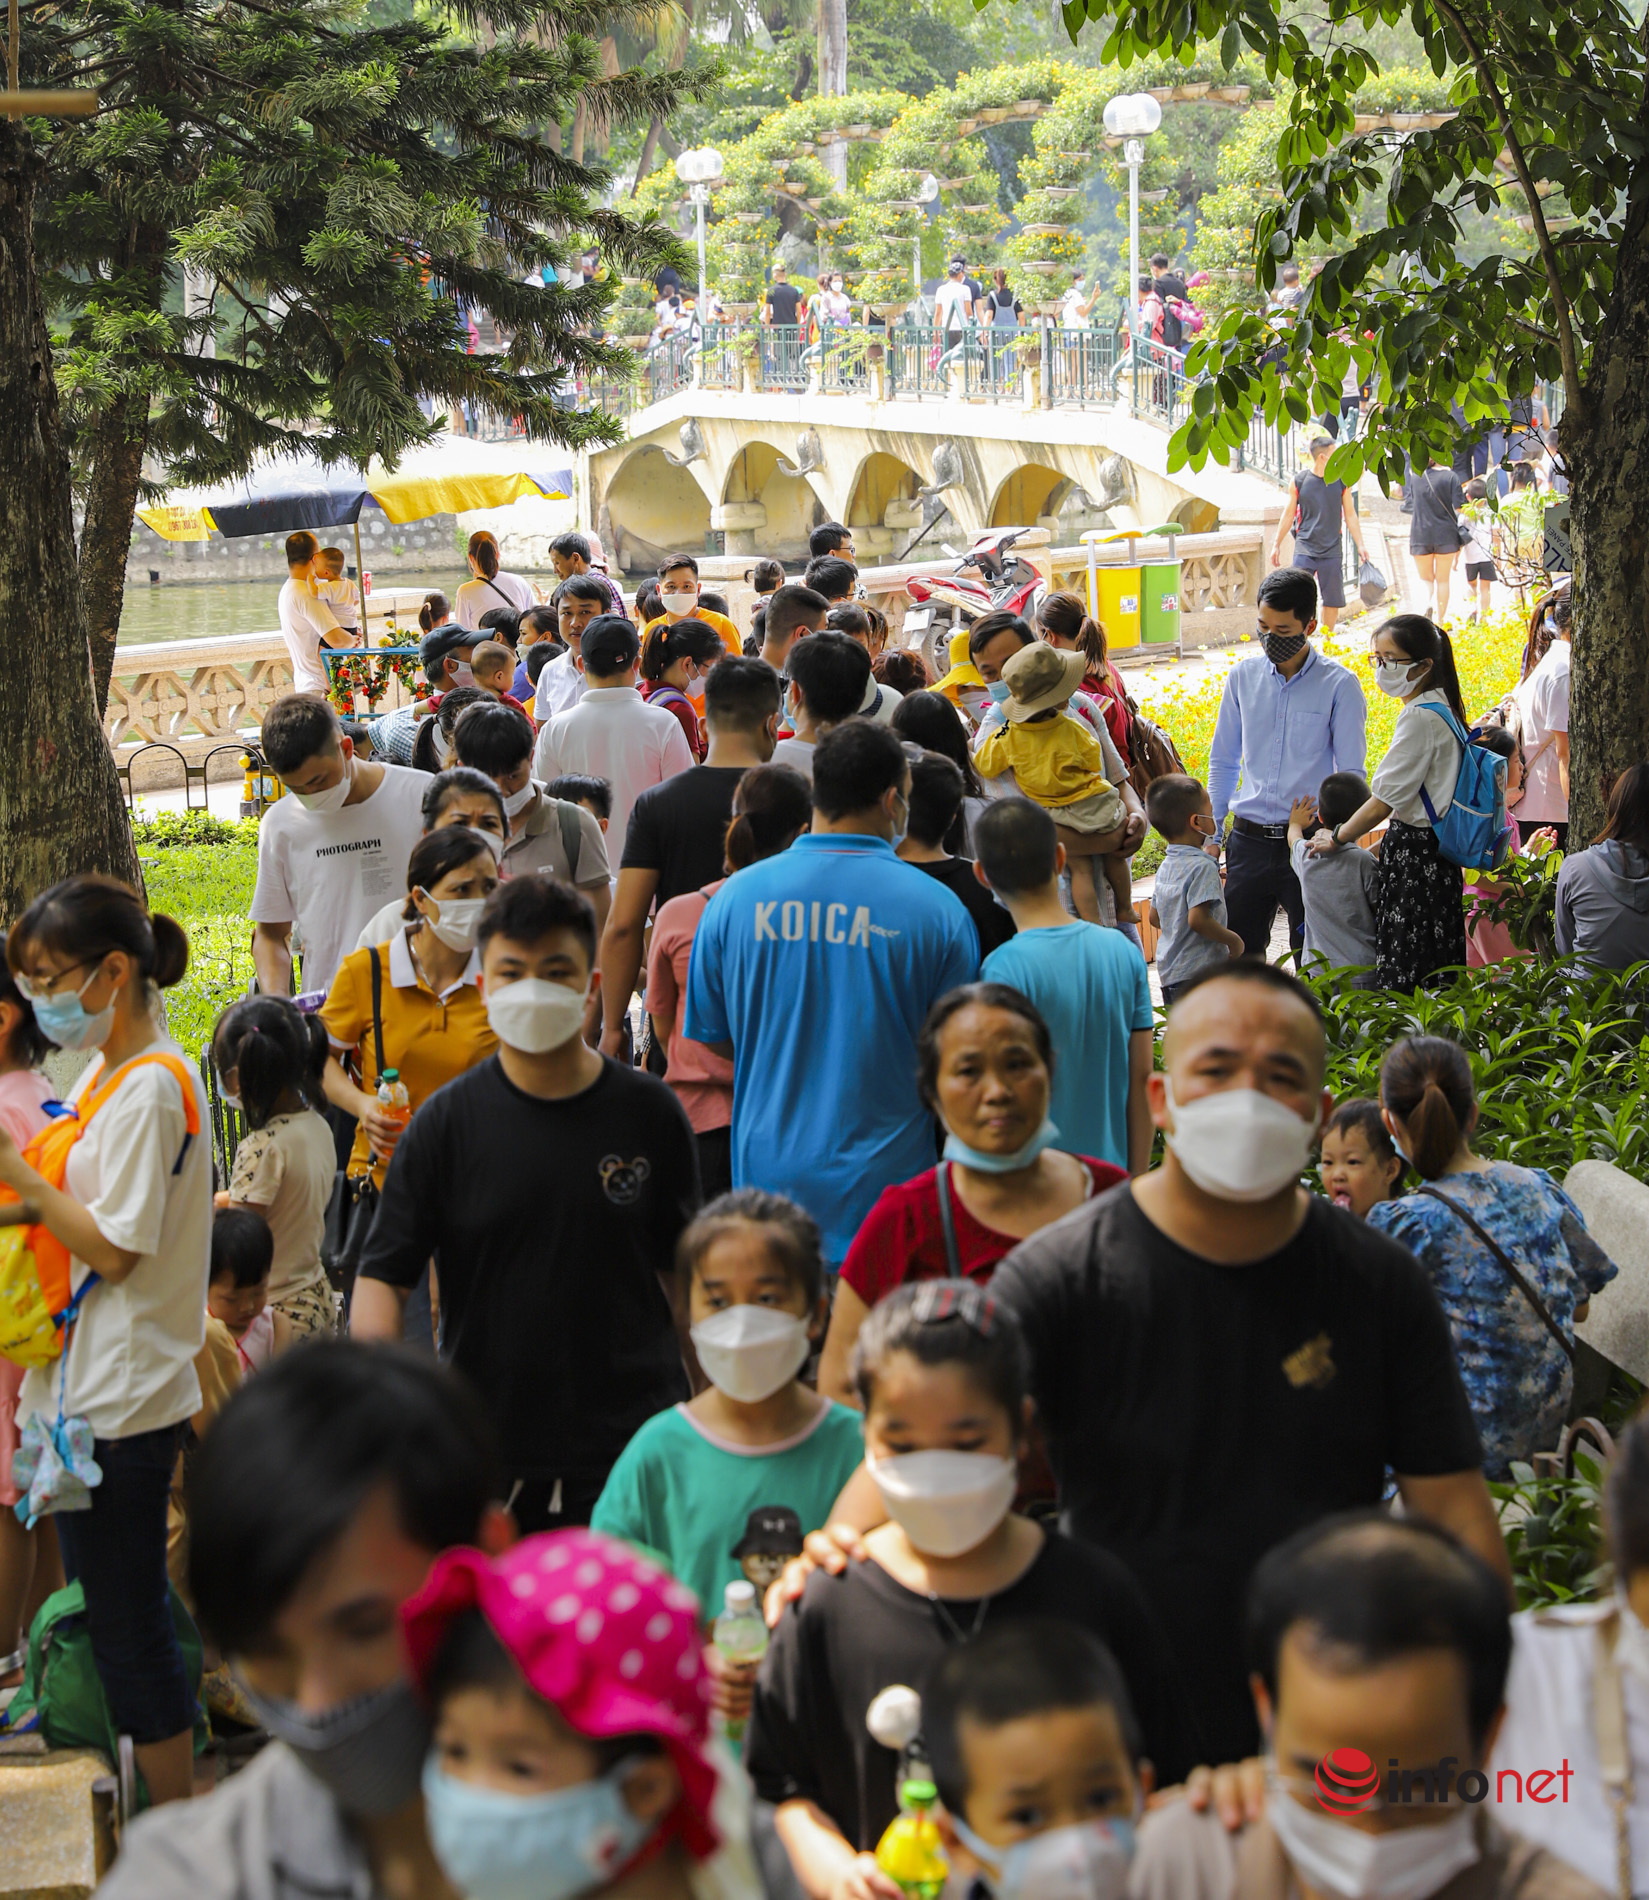 Hàng vạn người đổ về công viên Thủ Lệ ngày nghỉ lễ đầu tiên